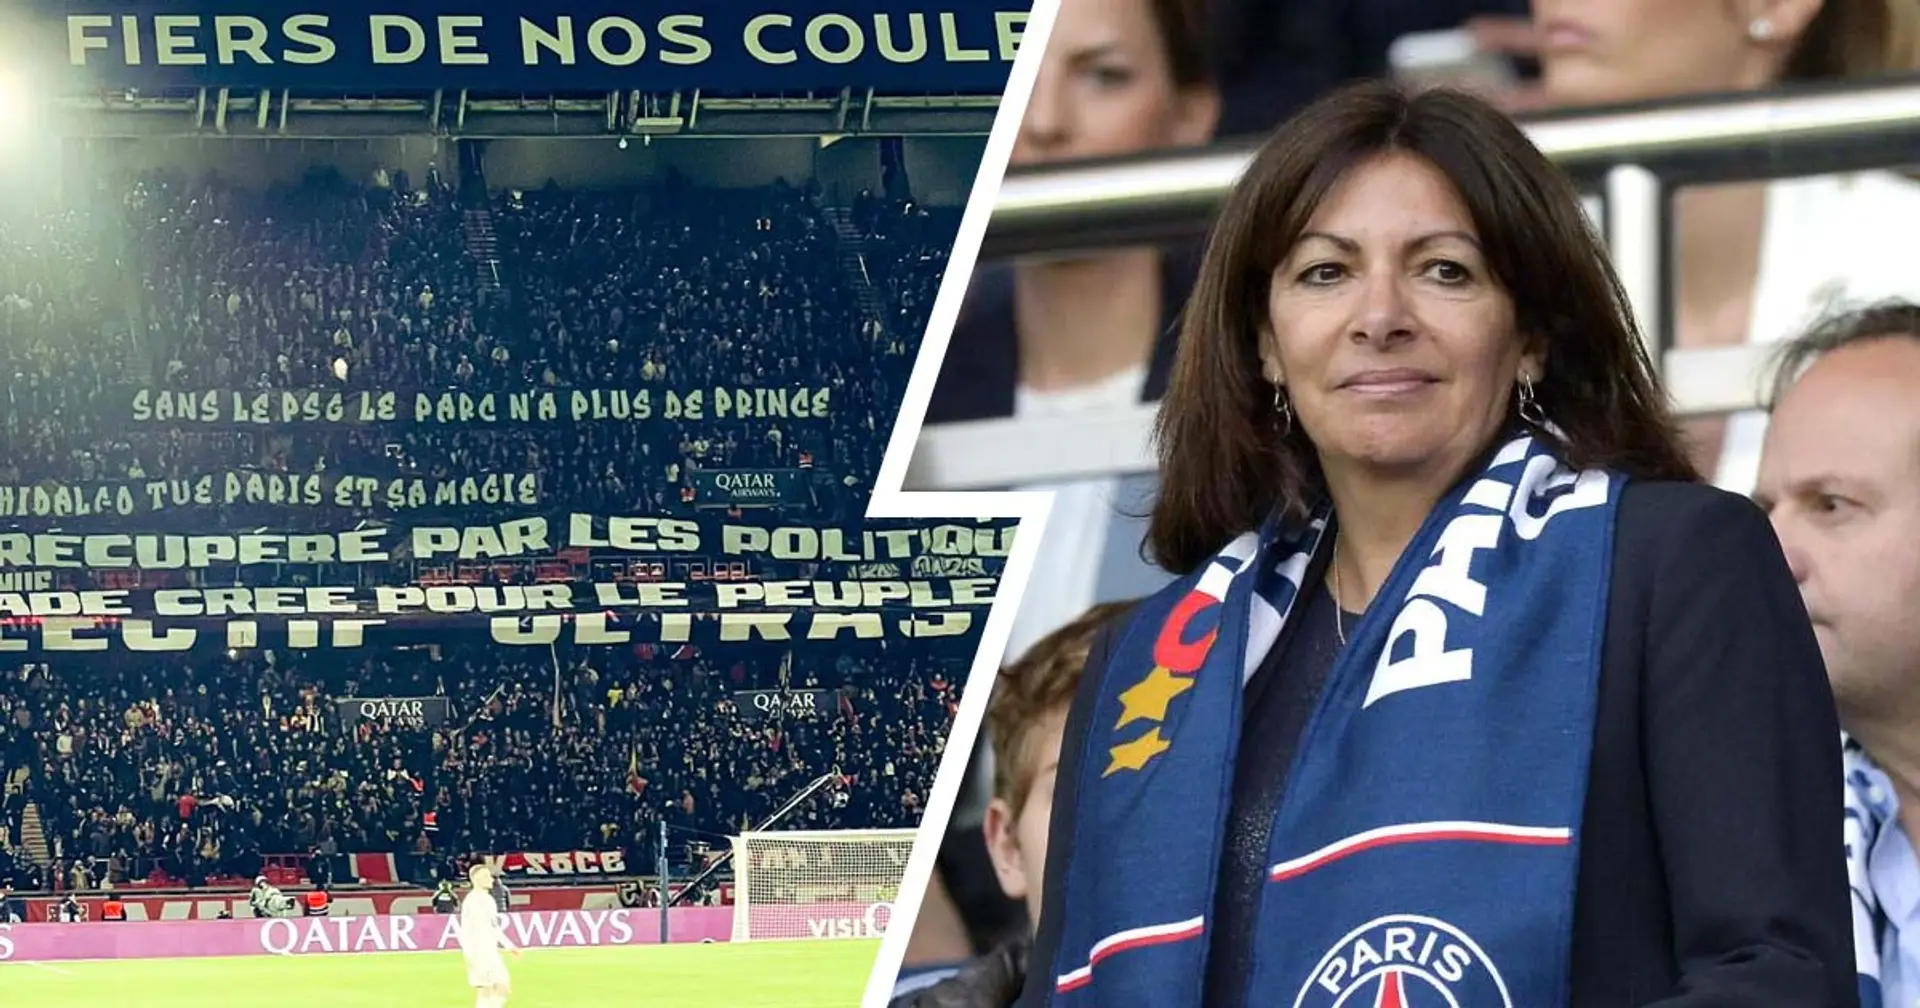 "Sans le PSG le Parc n'a plus de Prince", les supporters du PSG manifestent leur colère envers Anne Hidalgo